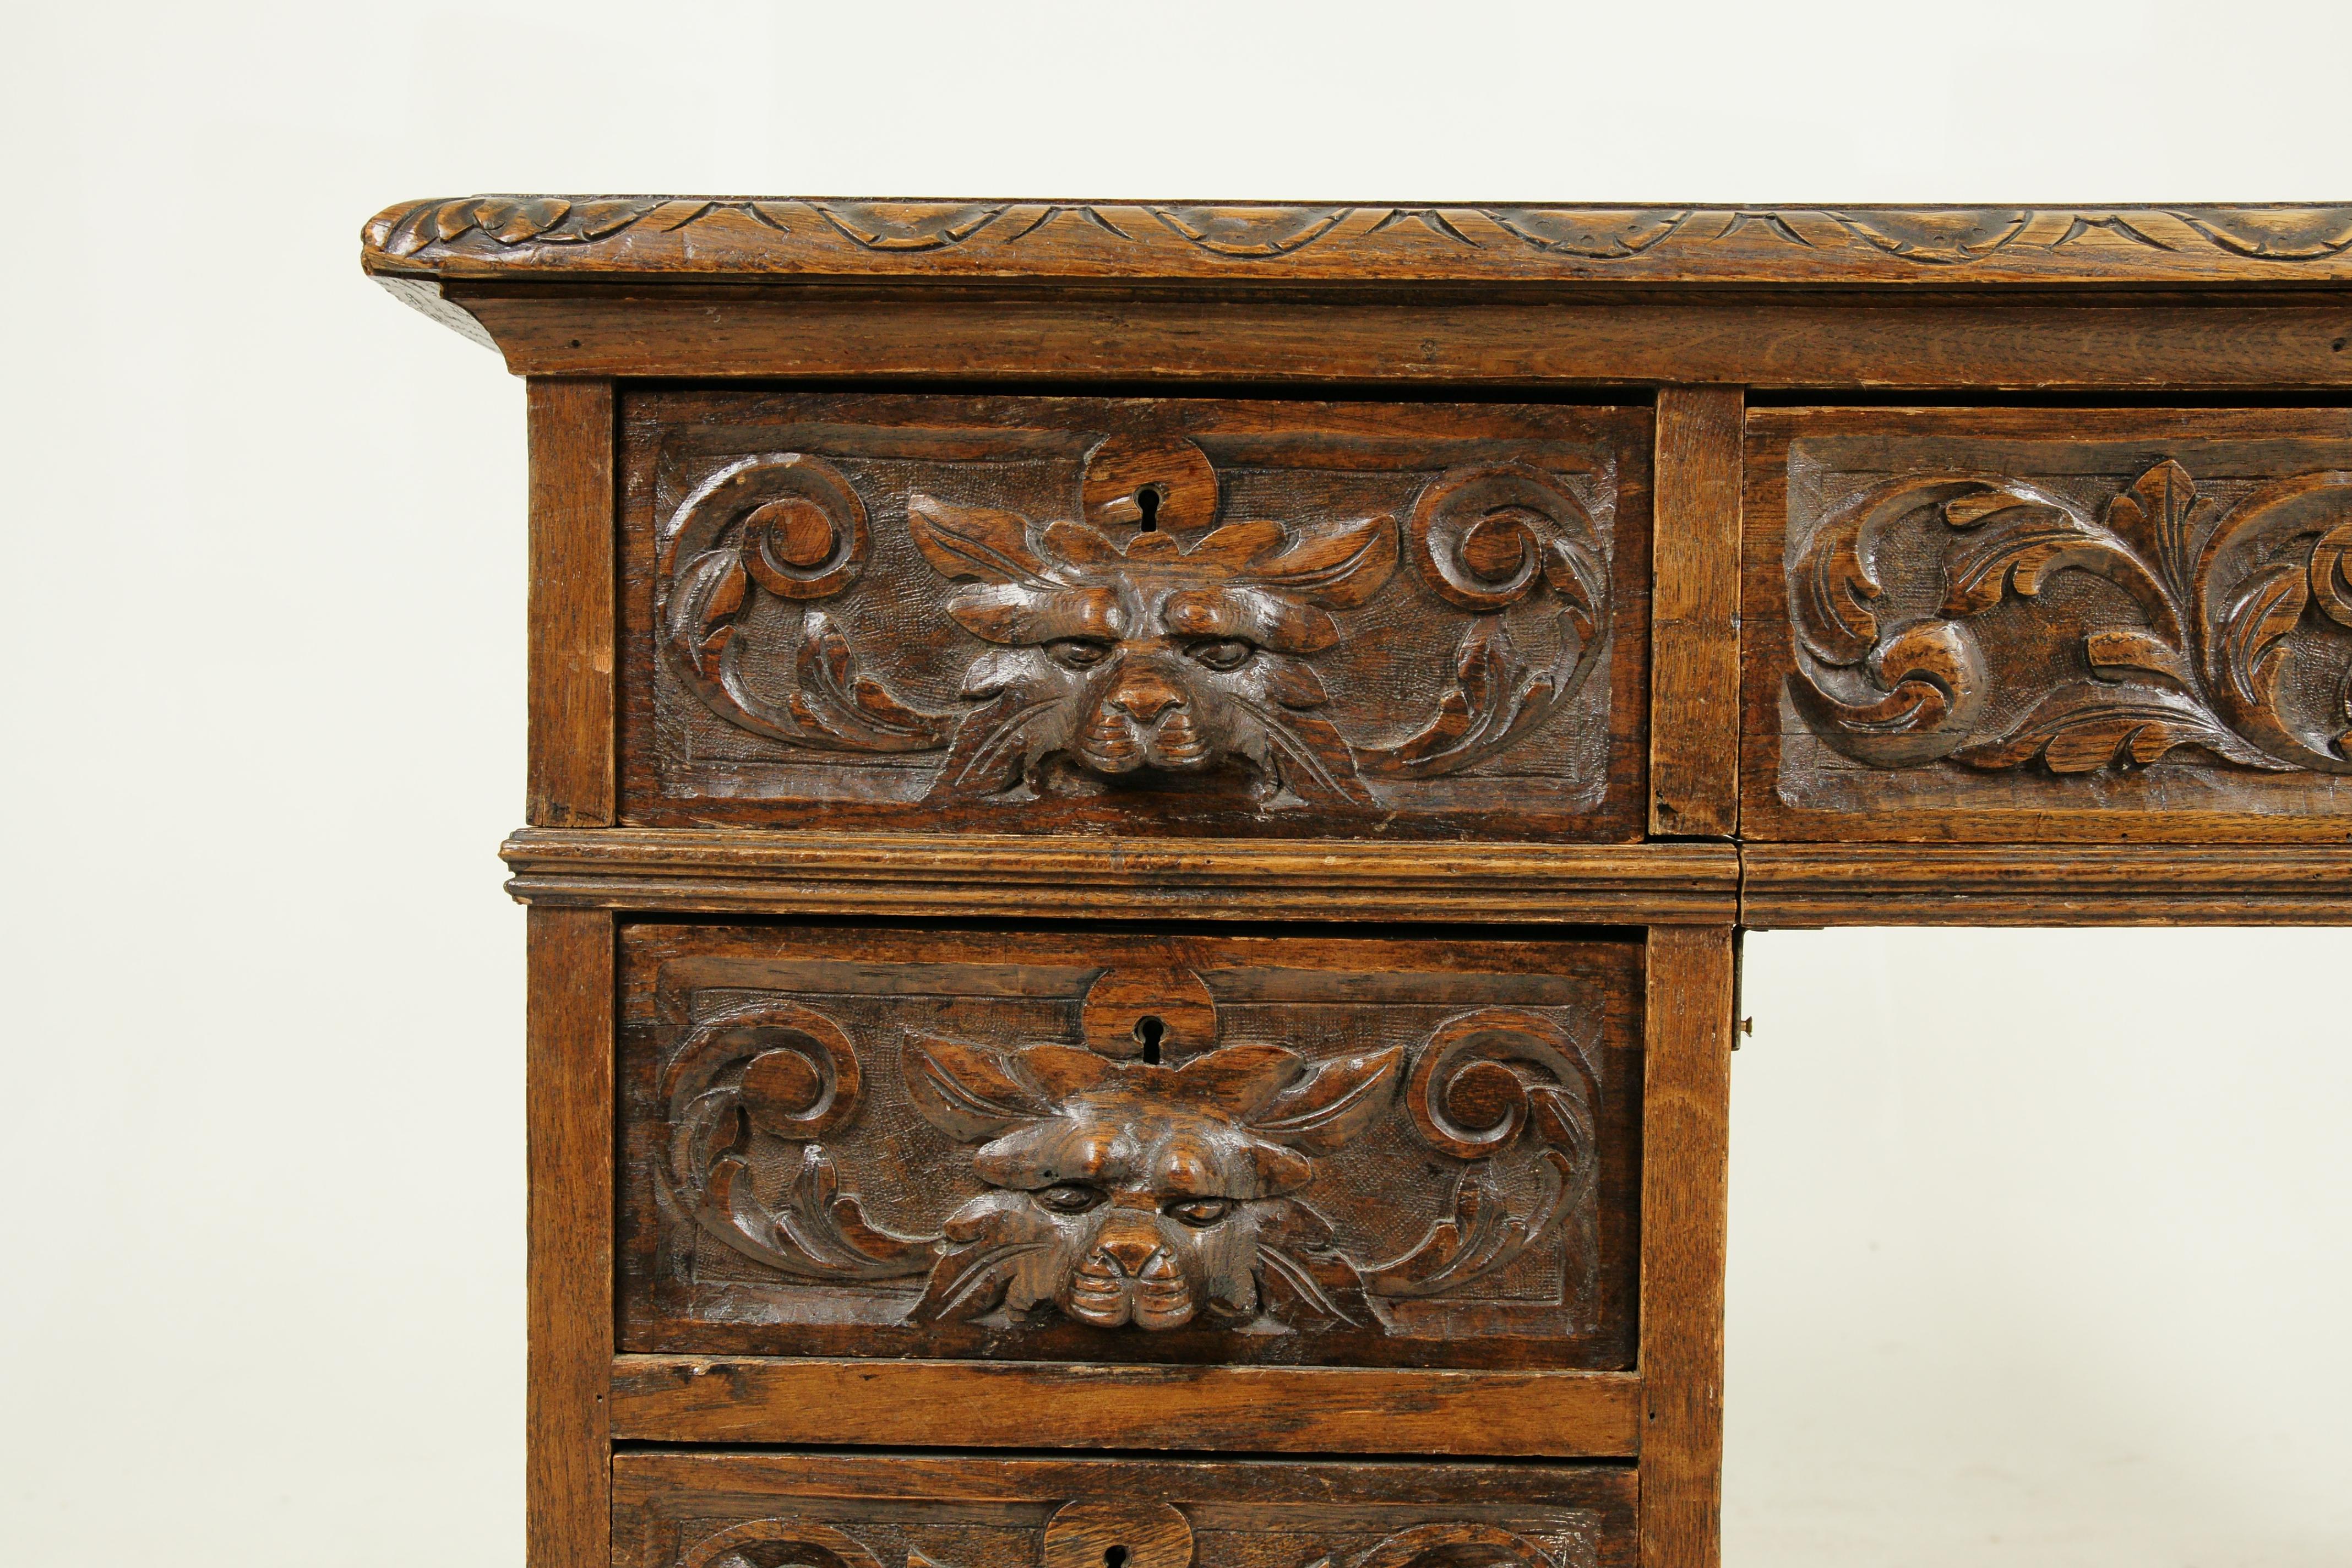 Scottish Antique Carved Desk, Double Pedestal Desk, 